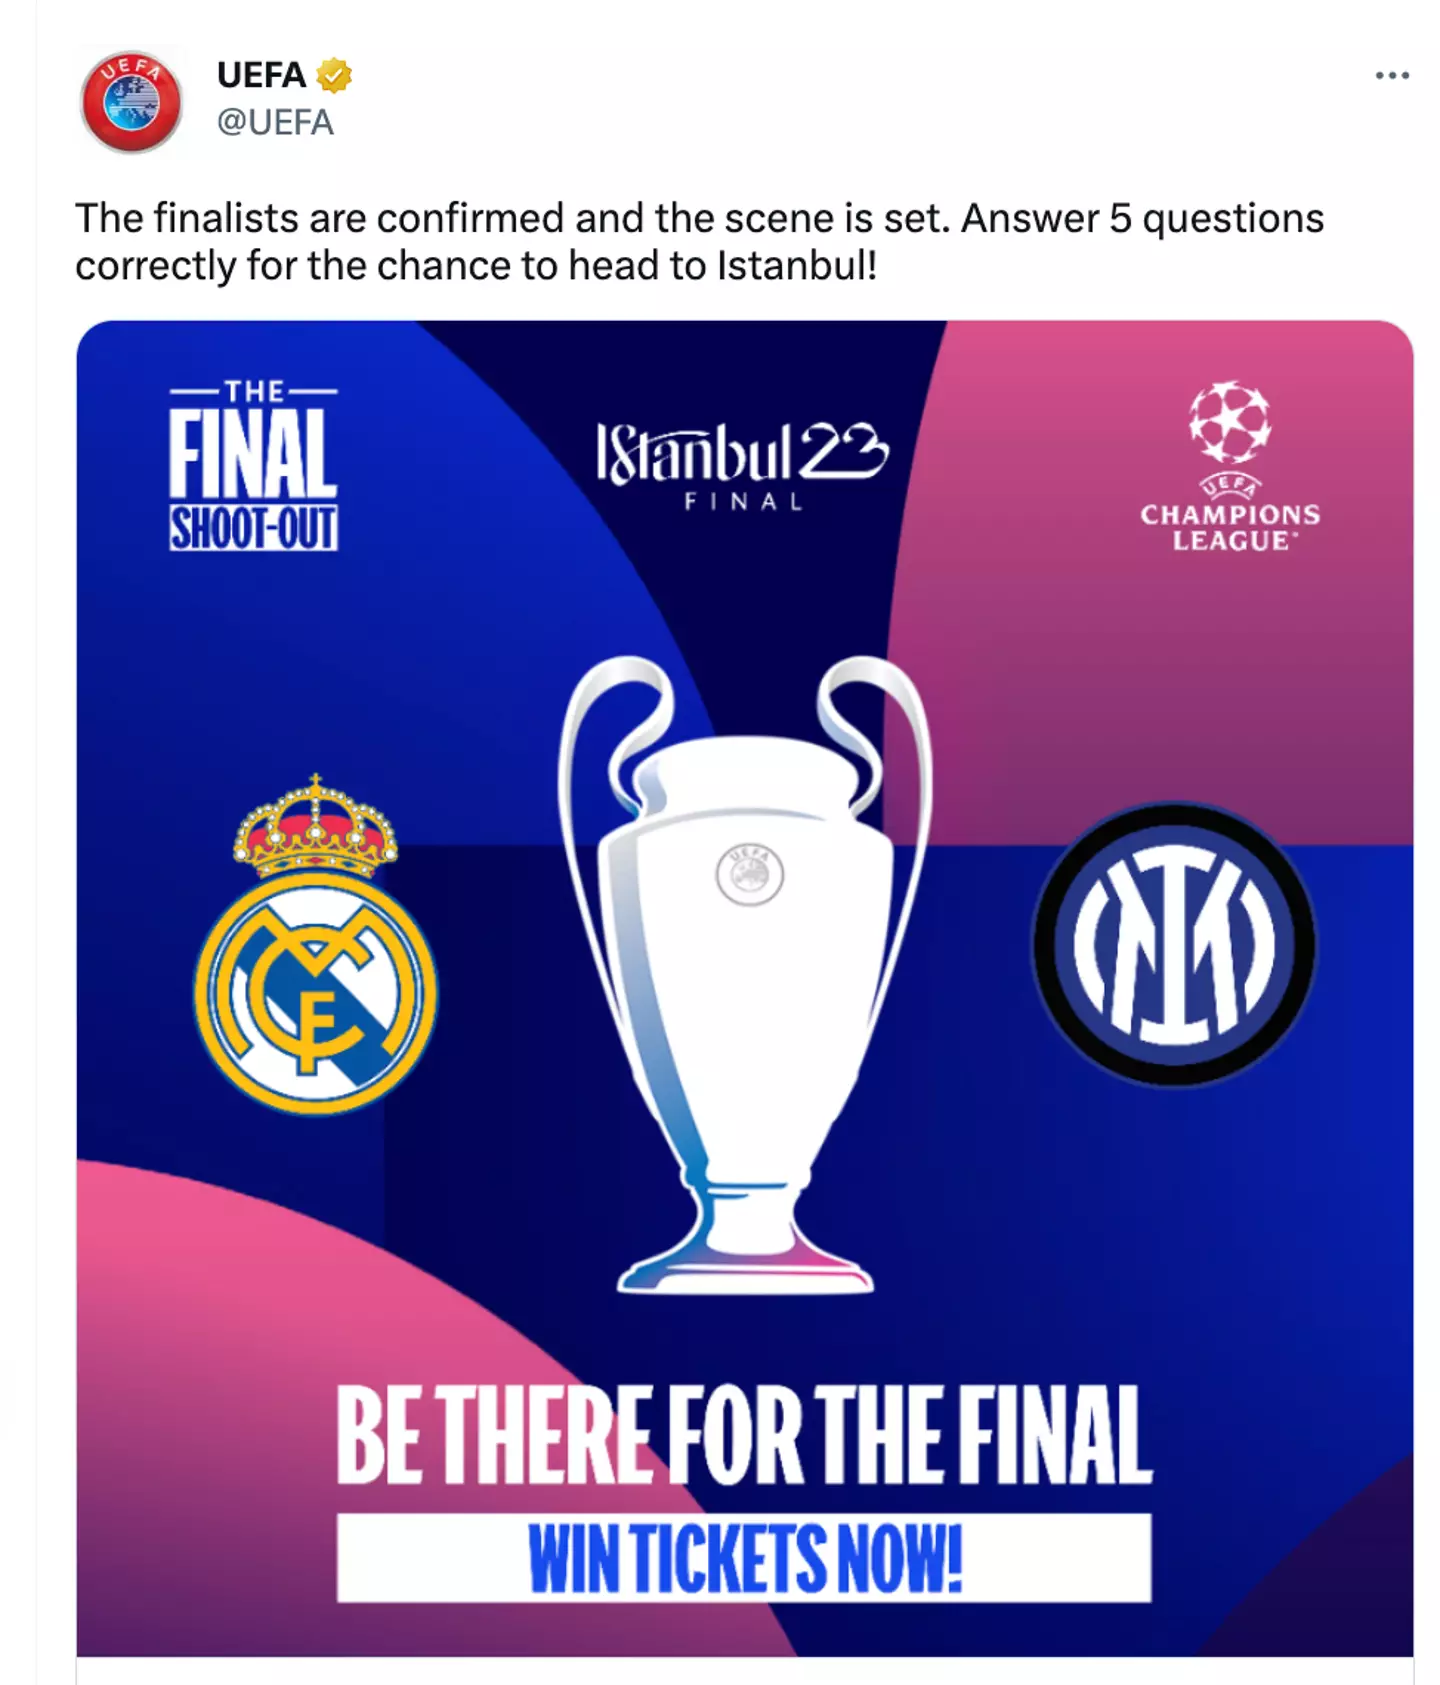 UEFA's now deleted tweet. Image credit: UEFA/Twitter